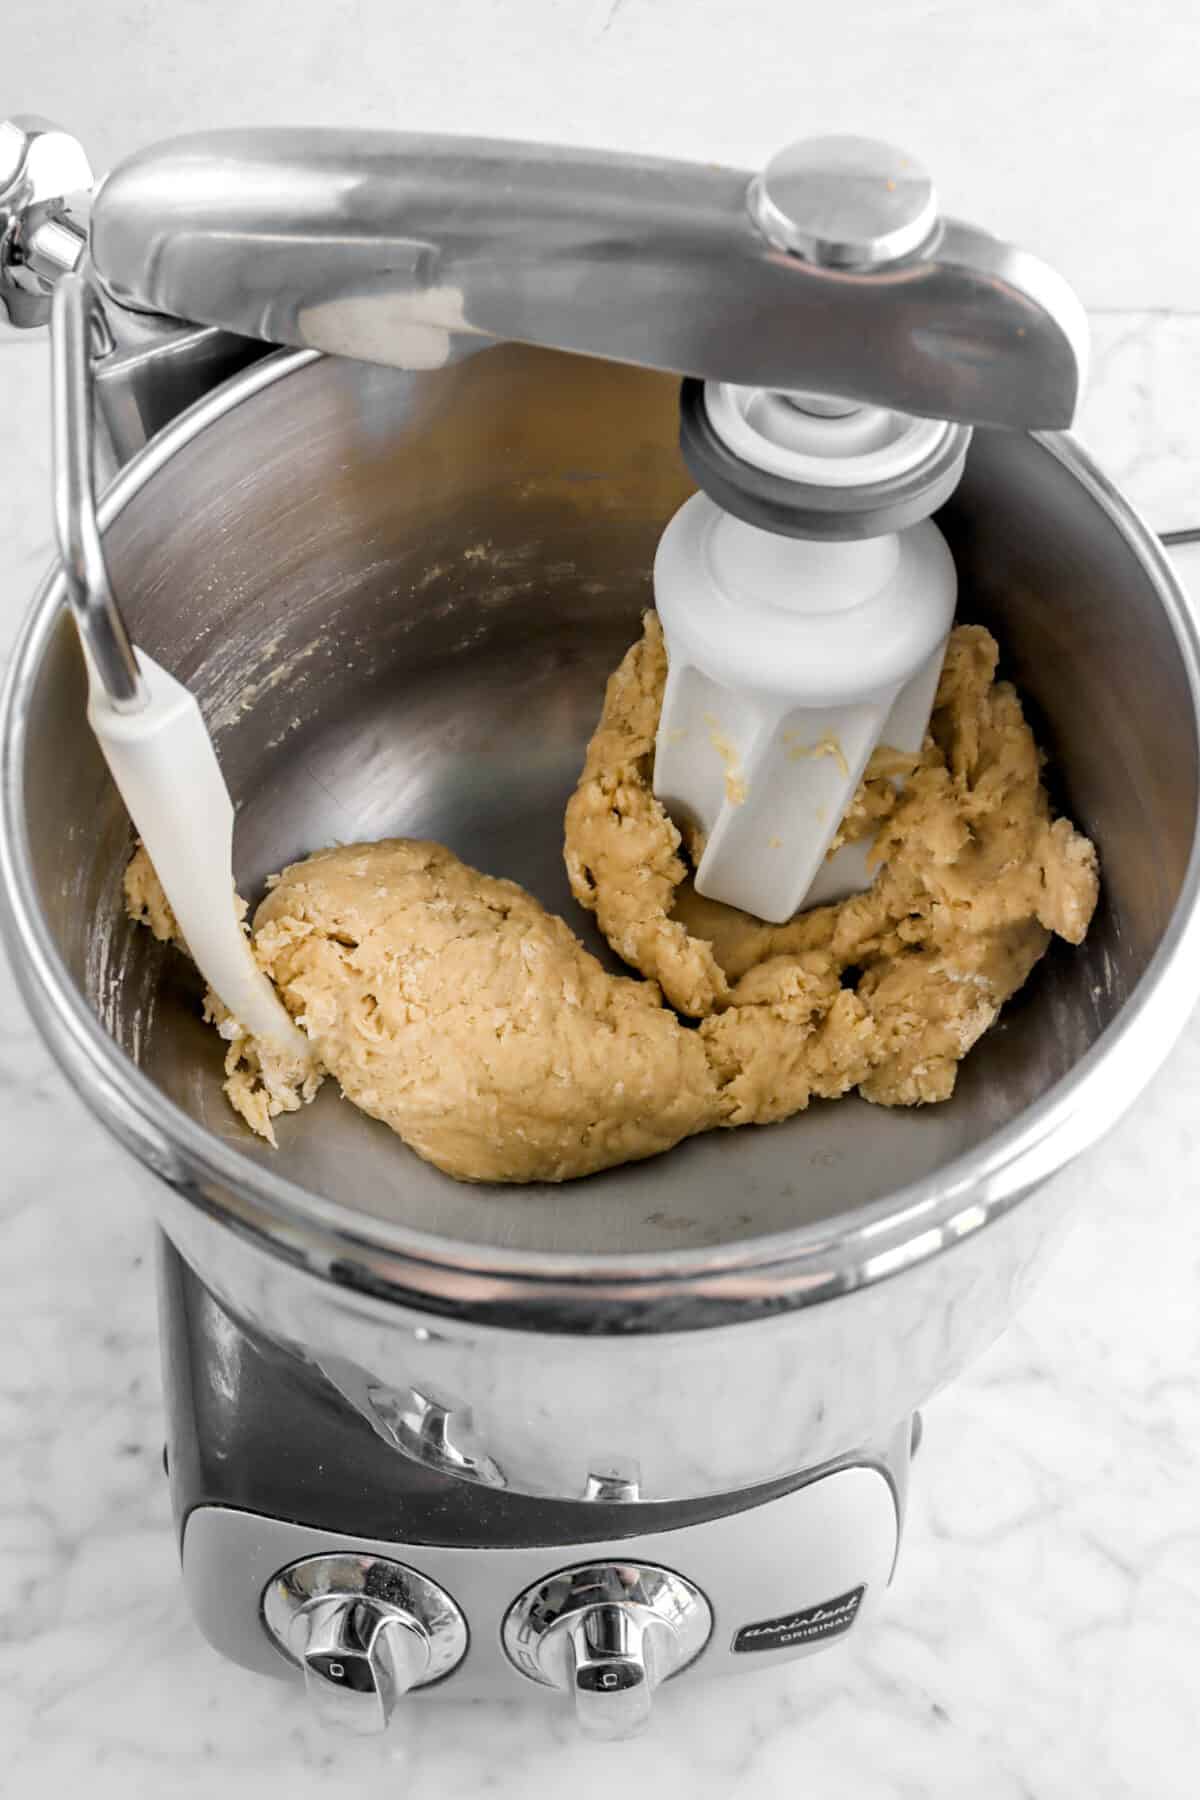 rough dough in mixer